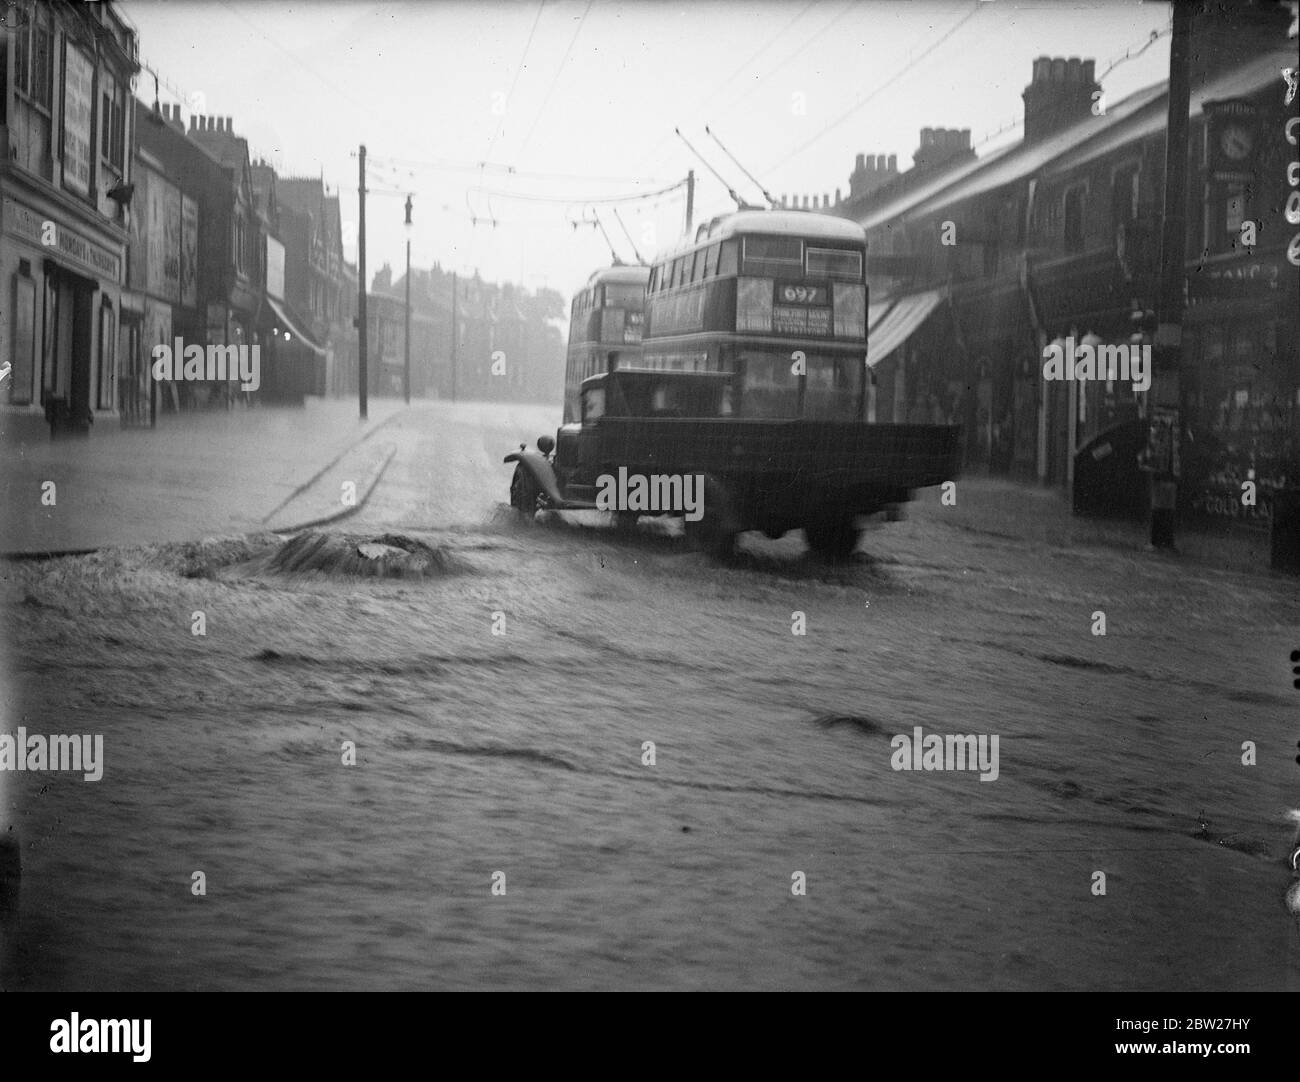 Ein Schachtloch, das in der überfluteten Kreuzung von Chingford Road und Forest Road Walthamstow aufgezwungen wurde, sintflutartige Regenfälle und überflutete Straßen und Häuser, folgte einem schrecklichen Sommergewitter, das in Walthamstow Chaos verursachte. 15 Juli 1937. Stockfoto